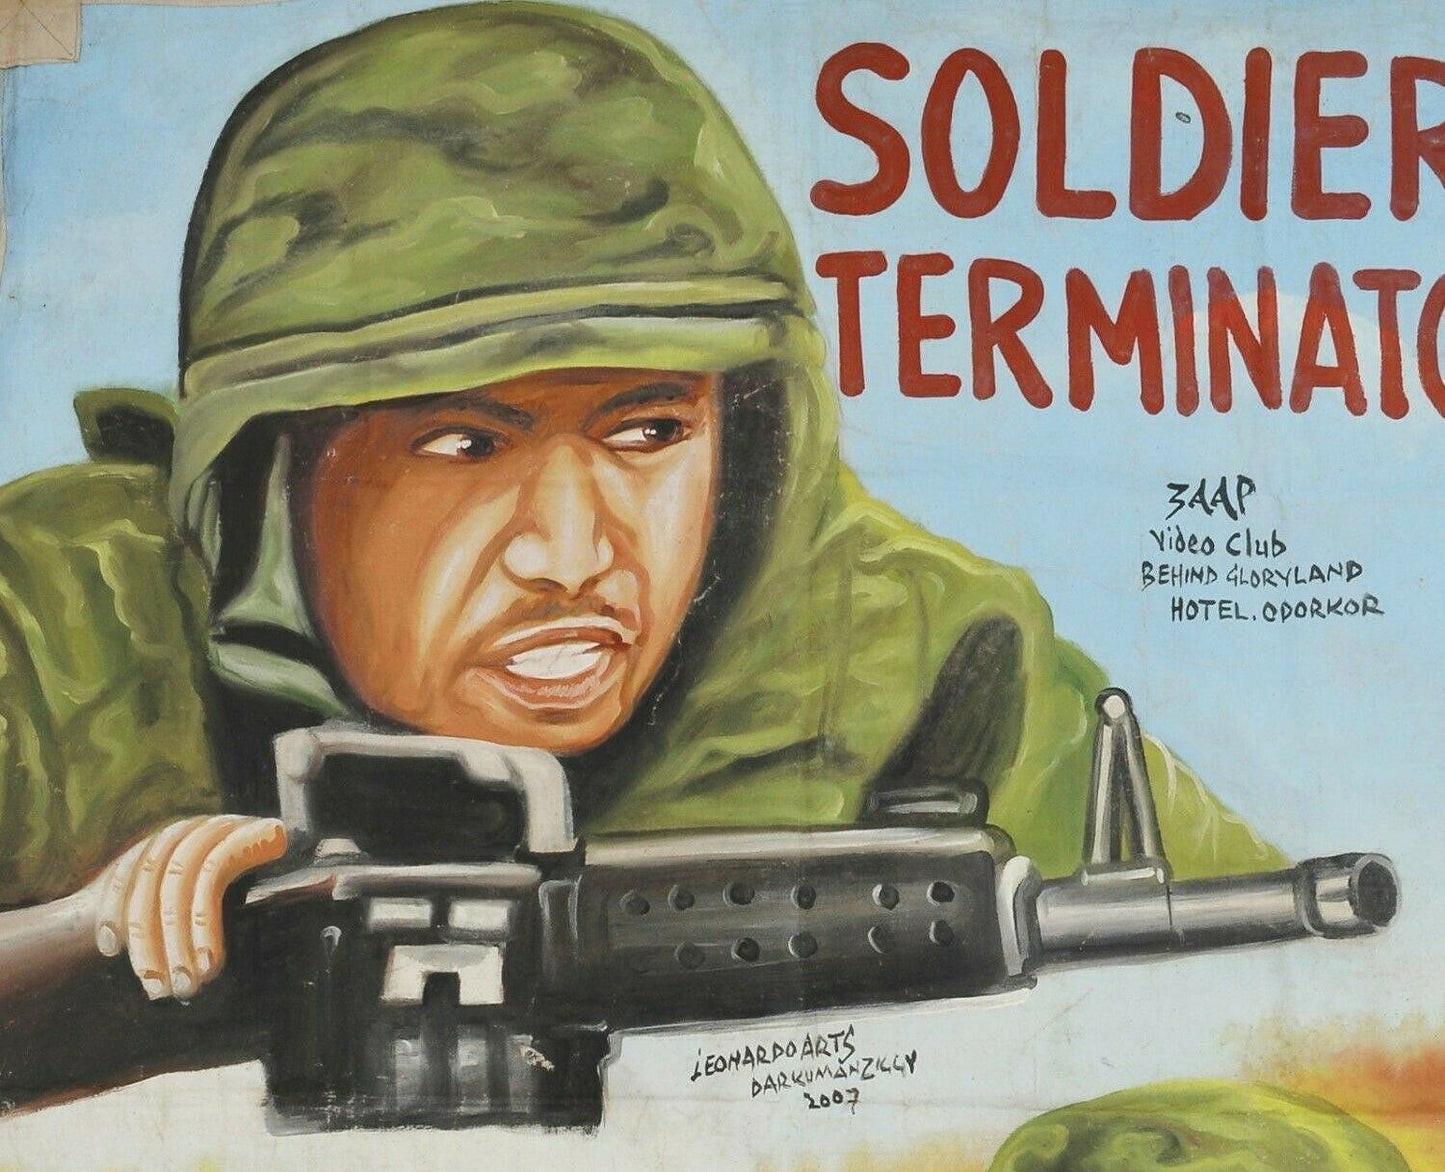 Αφίσα κινηματογράφου κινηματογράφου της Γκάνας αφρικανικής τέχνης ζωγραφισμένη στο χέρι SOLDIER TERNMINATOR - Tribalgh